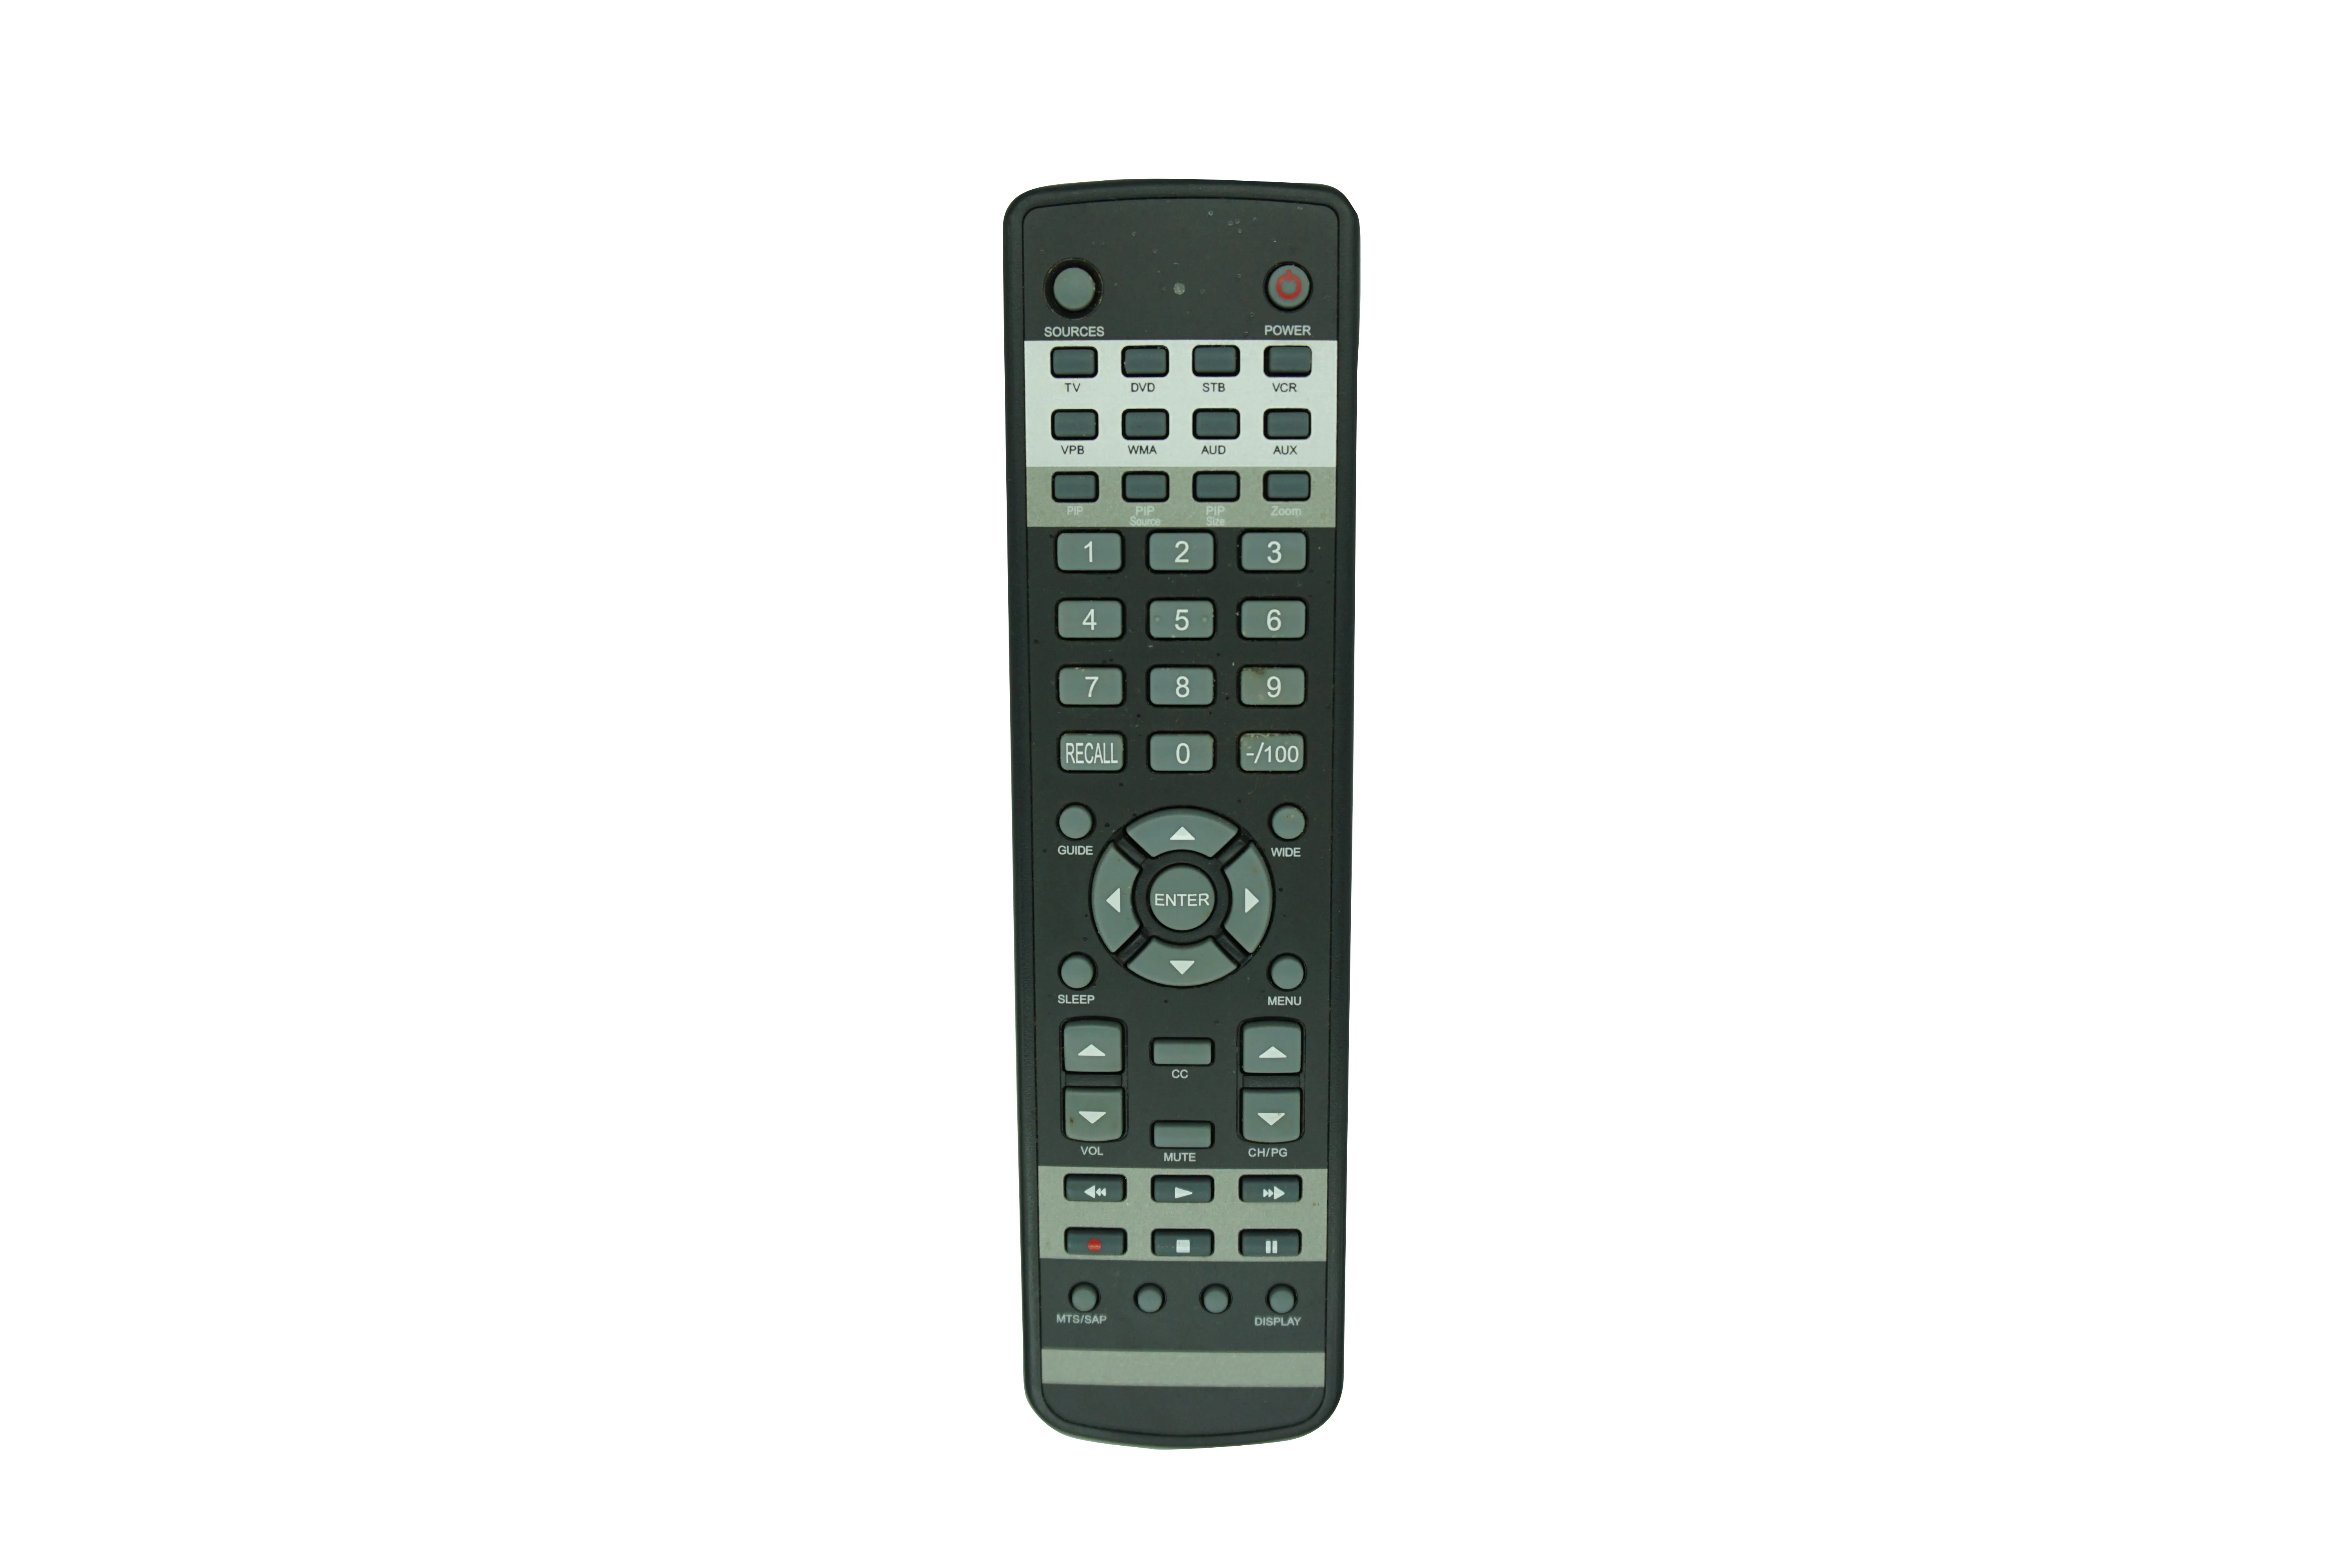 Telecomando per Viewsonic UBRC-120 A-00008027 N2652W N2751W N2752W N3250W N3251W N3252W N3260W N3751W N3752W N4251W LCD HDTV TV Monitor